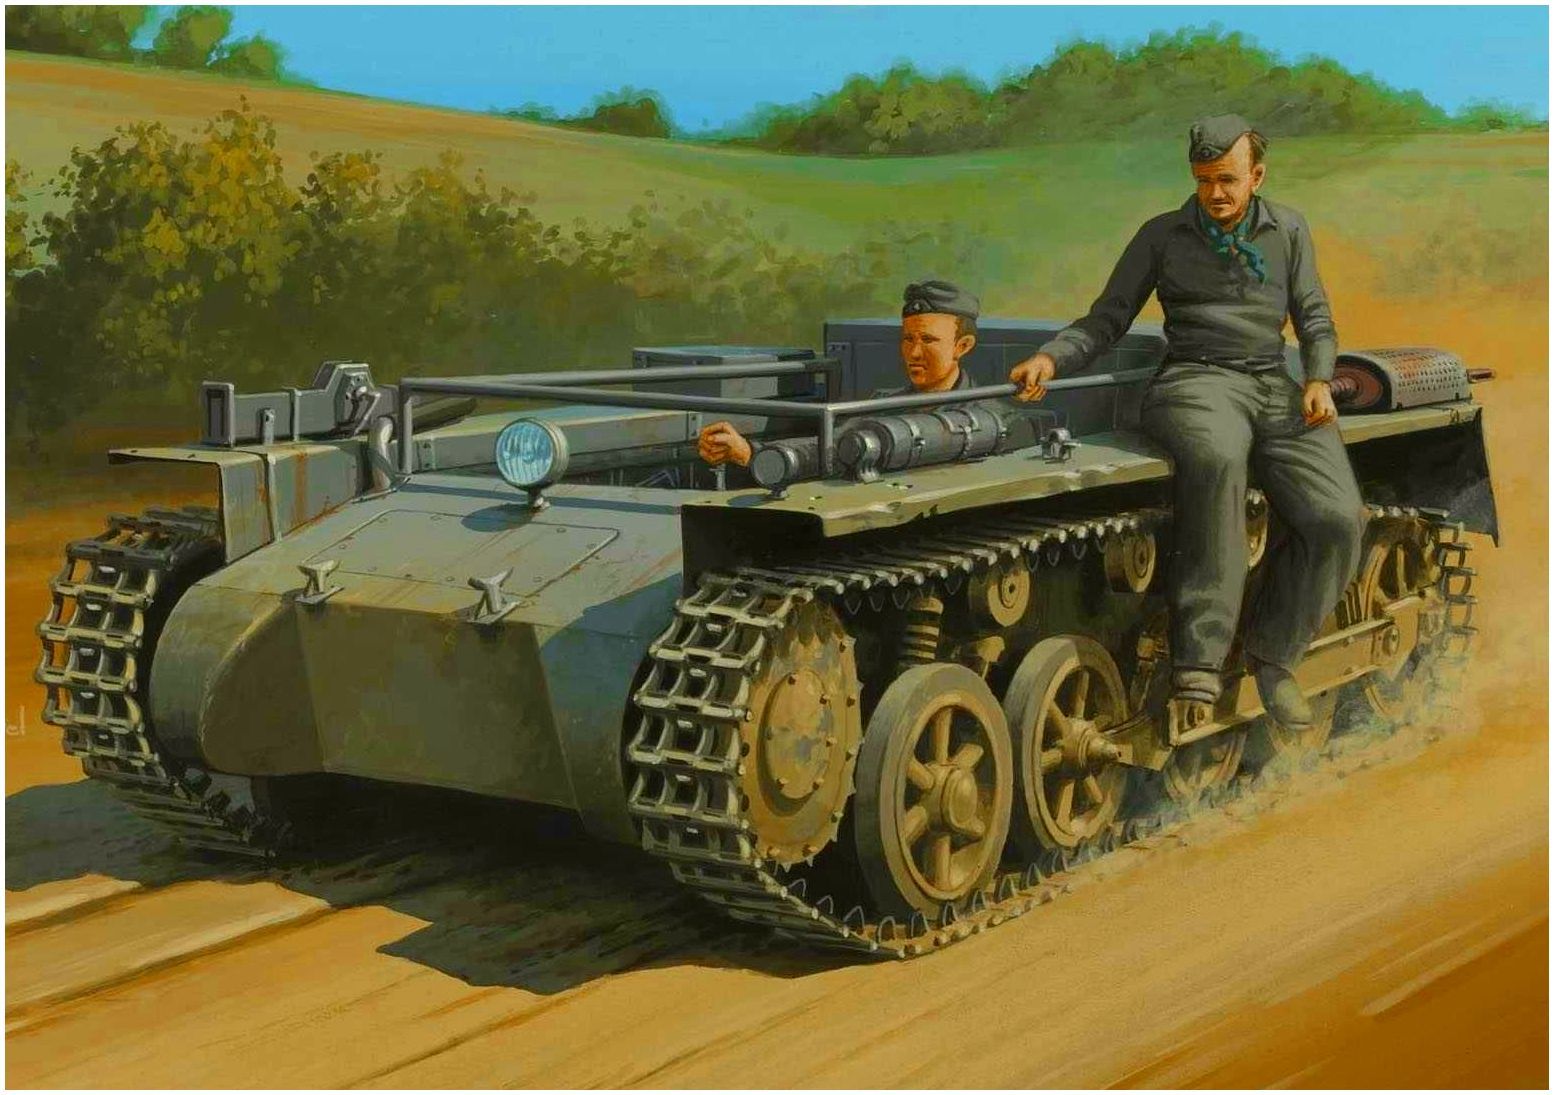 Wróbel Arkadiusz. Обучение водителя танка.